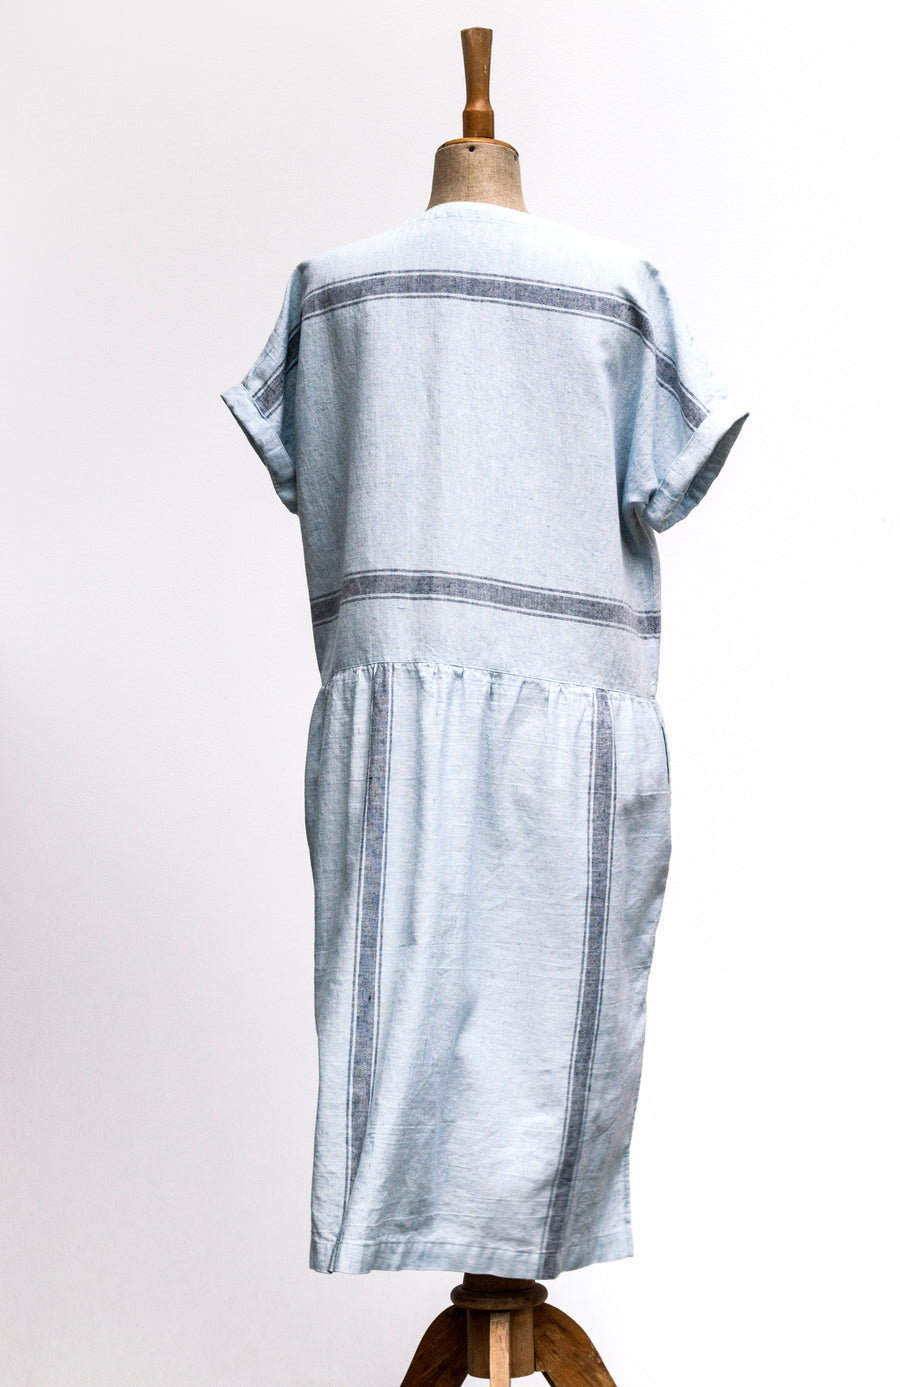 Venkovské šaty len/bavlna světle modrá s vetkanými pruhy